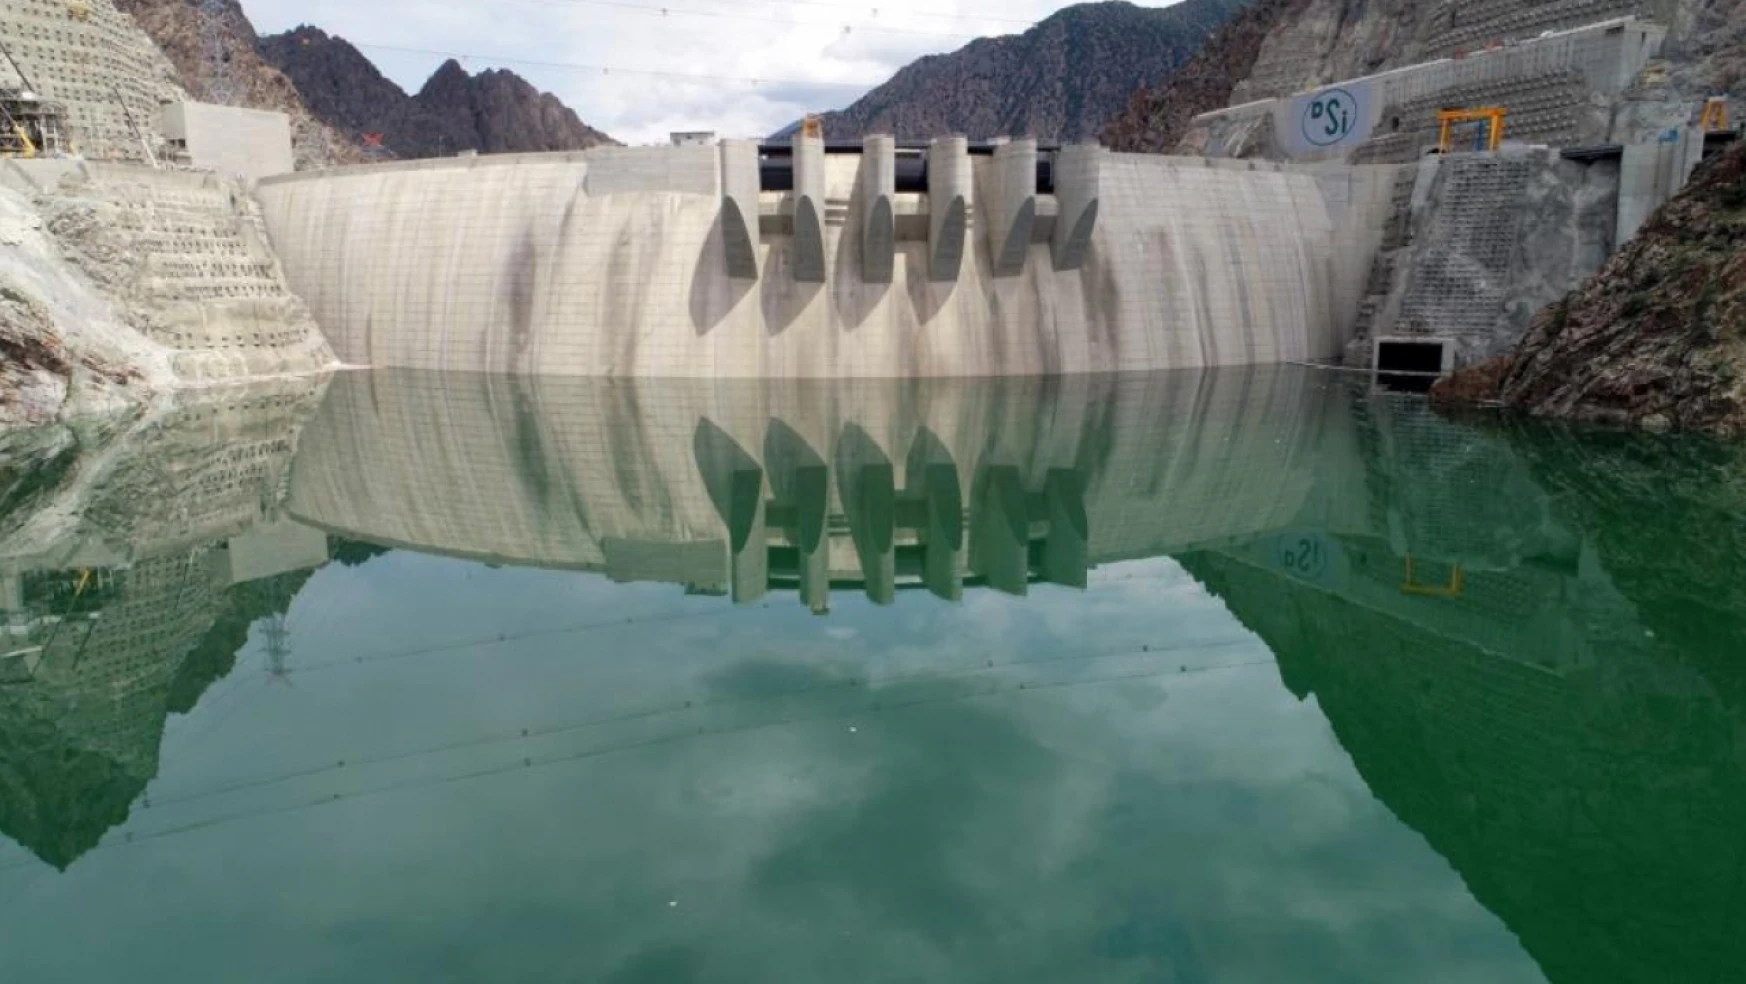 Yusufeli Barajı'nda elektrik üretimi için son 60 metre